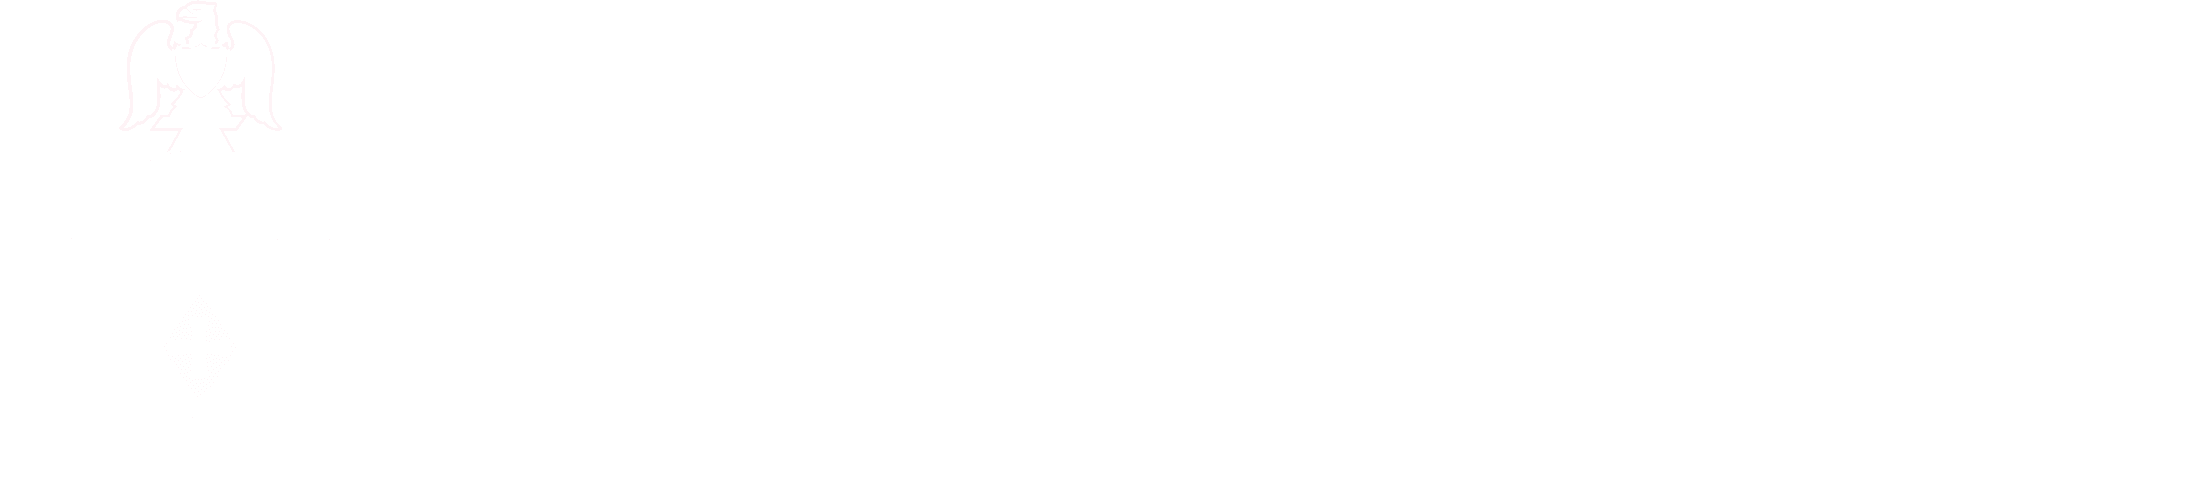 niagara university in ontario logo